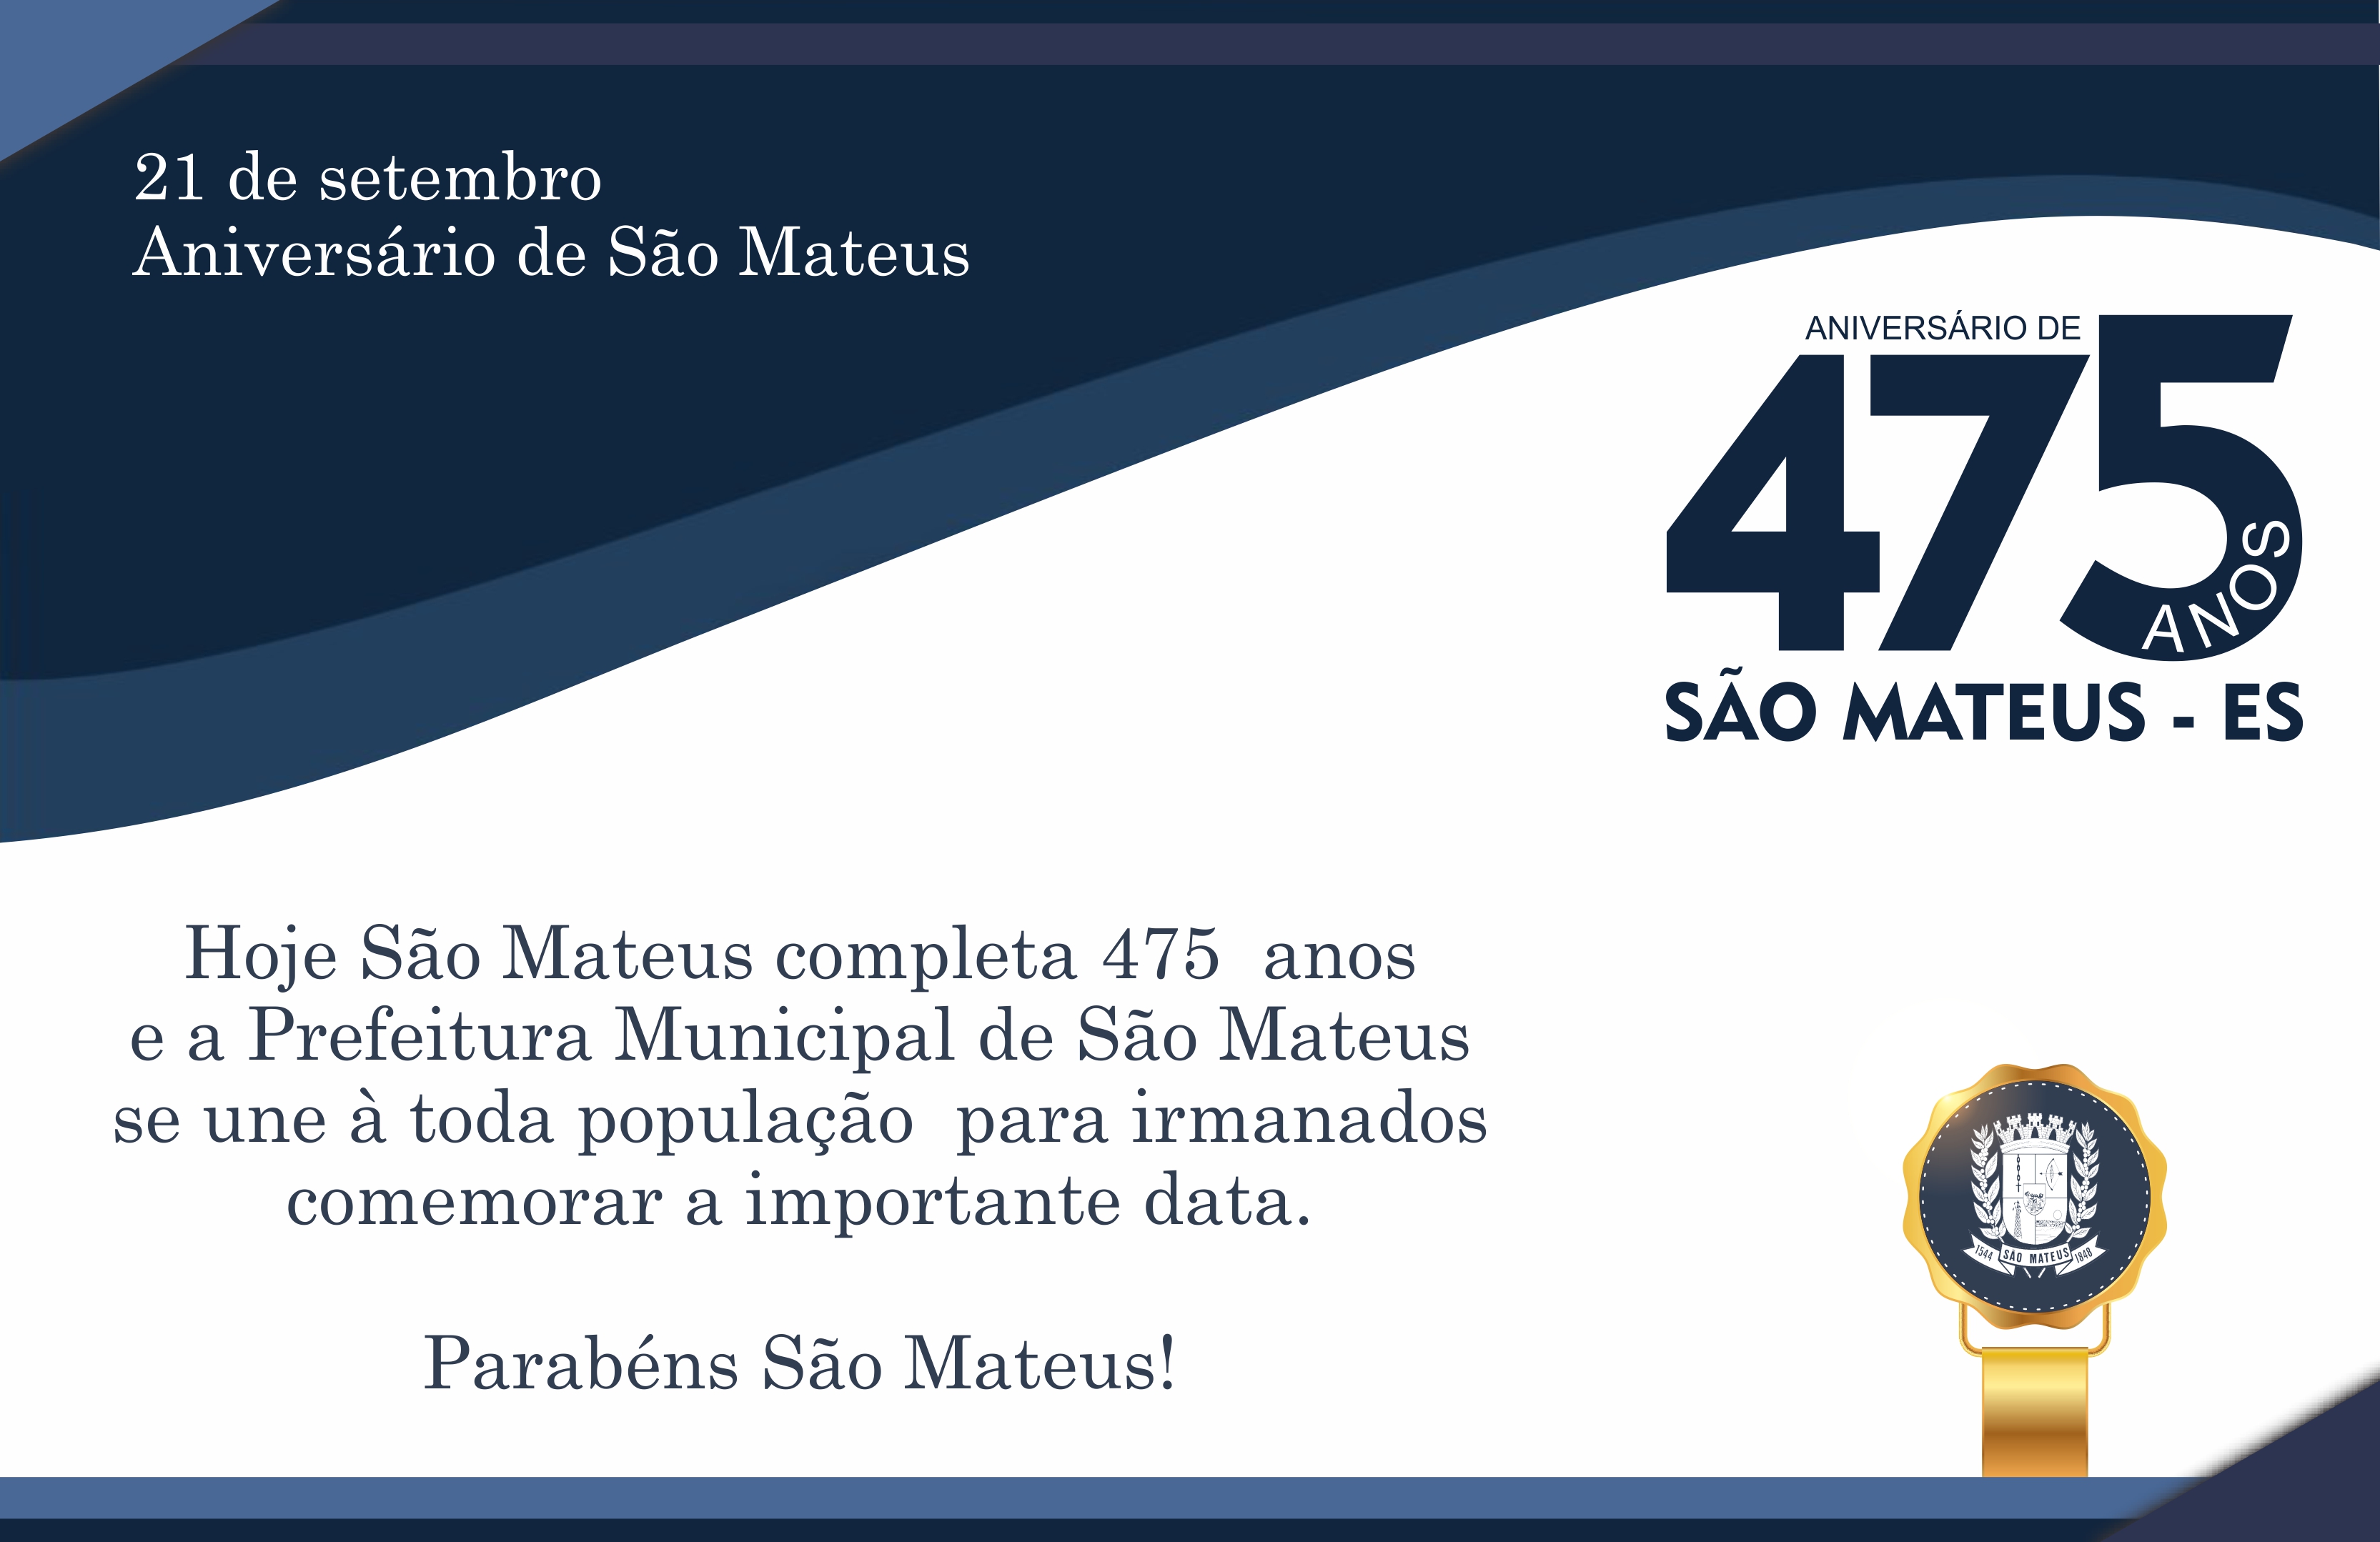 21 DE SETEMBRO - ANIVERSÁRIO DE SÃO MATEUS